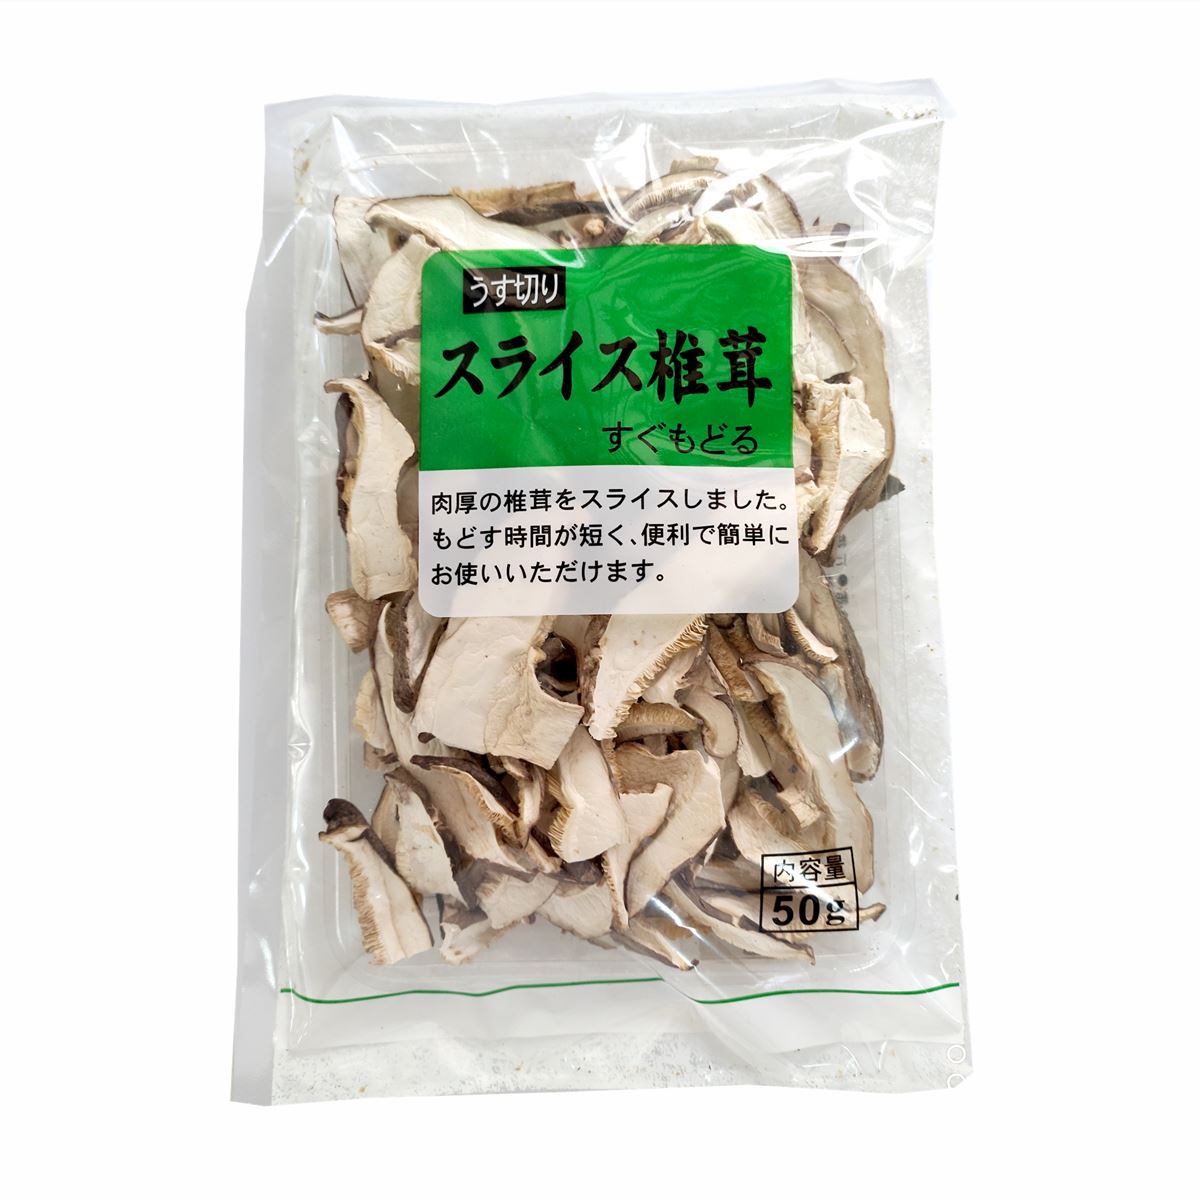 Cogumelo Desidratado Shitake Fatiado 50g - Fuzhou